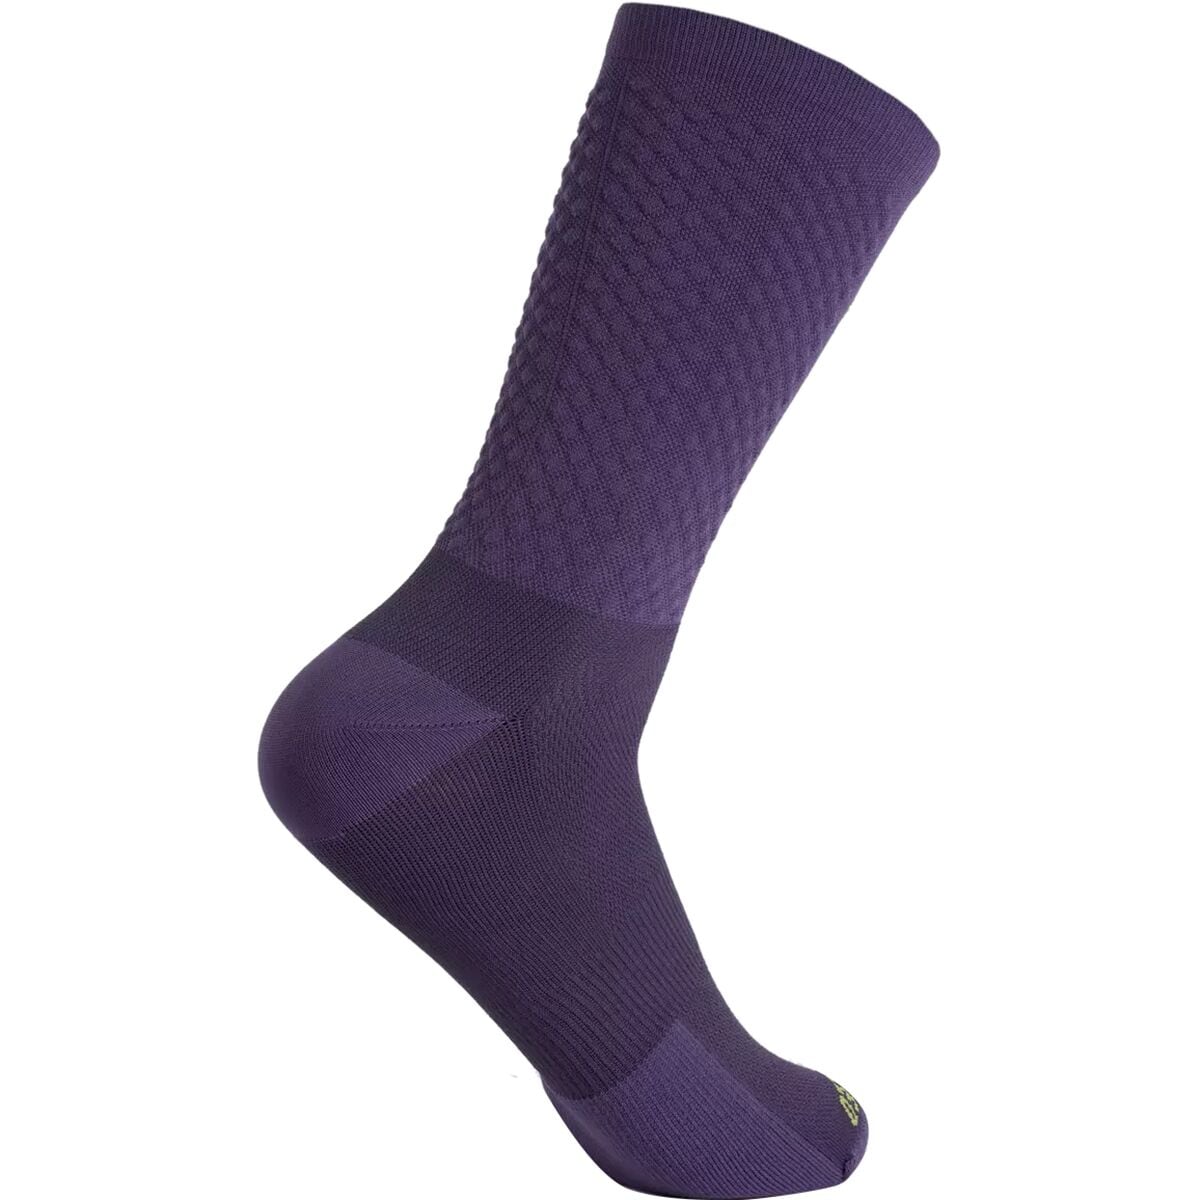 Specialized Kinetic Knit Tall Sock Dusk/Limestone, XL - Men's